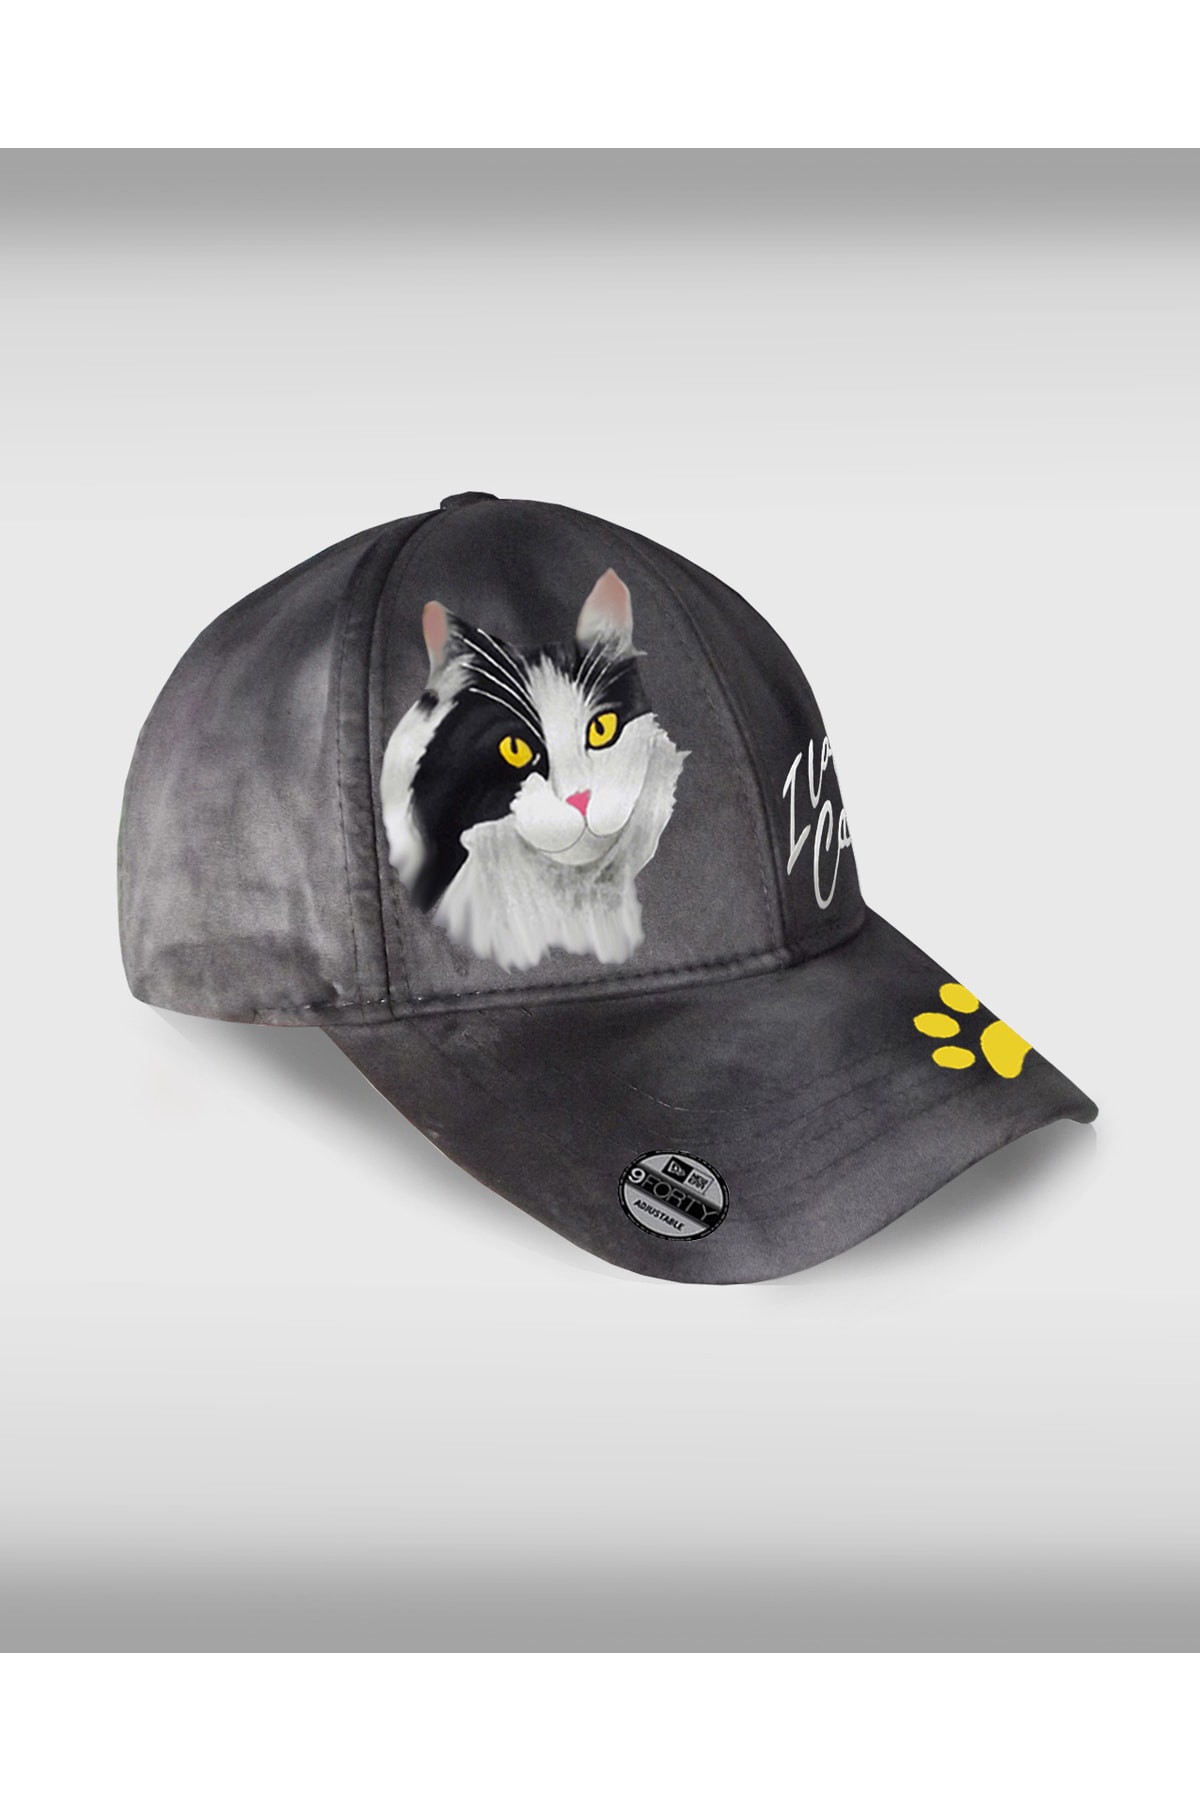 Thetshirtart Smokin Kedili Tasarım Airbrush Eskitme Şapka(kedi Baskılı)